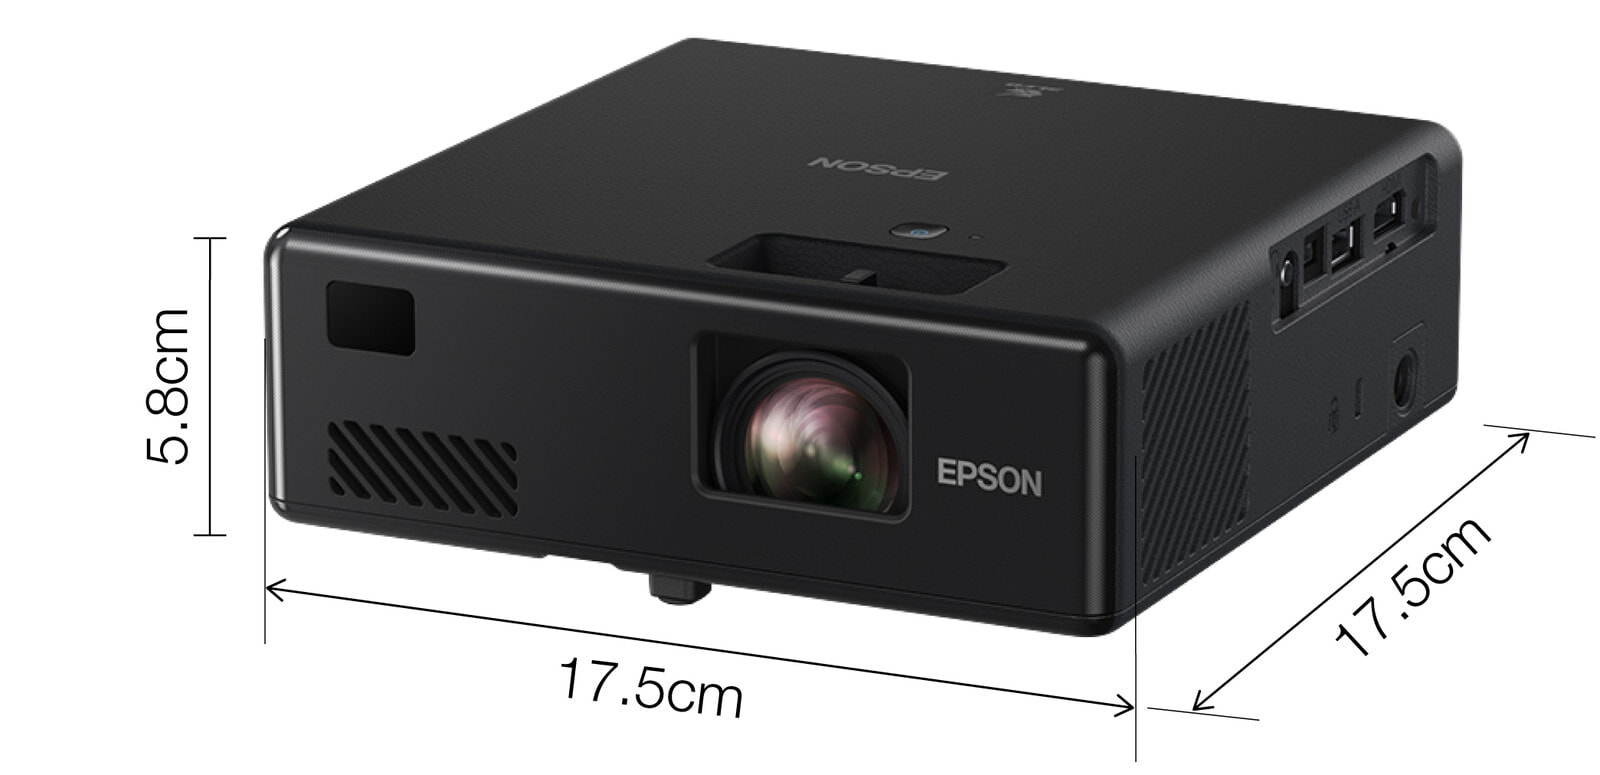 Epson EF-11 мультимедиа-проектор 1000 лм 3LCD 1080p (1920x1080) Настольный проектор Черный V11HA23040